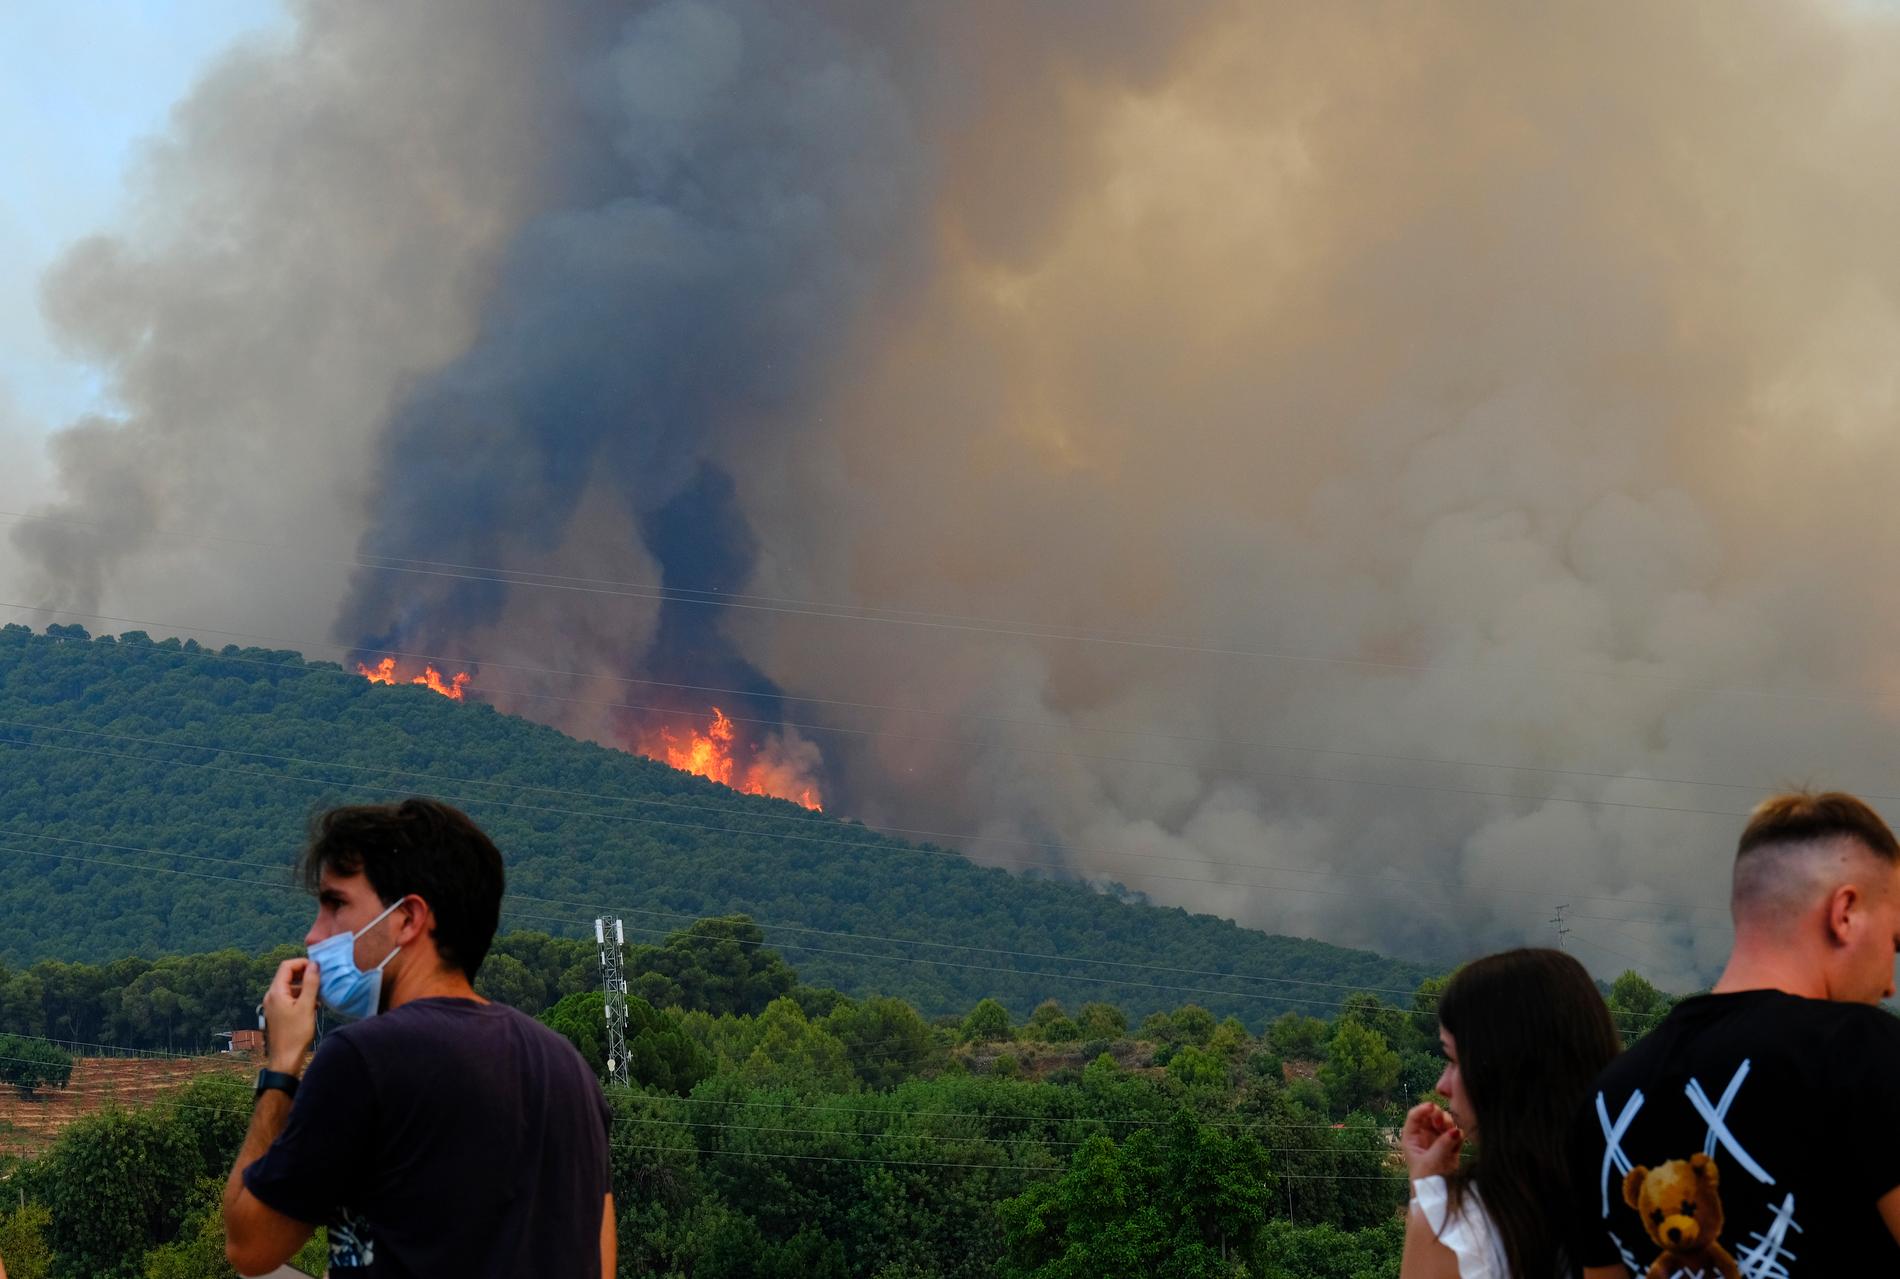 I Mijas, några mil från Málaga i Spanien, pågår en omfattande brand som tvingat över 3 000 människor att lämna sina hem.